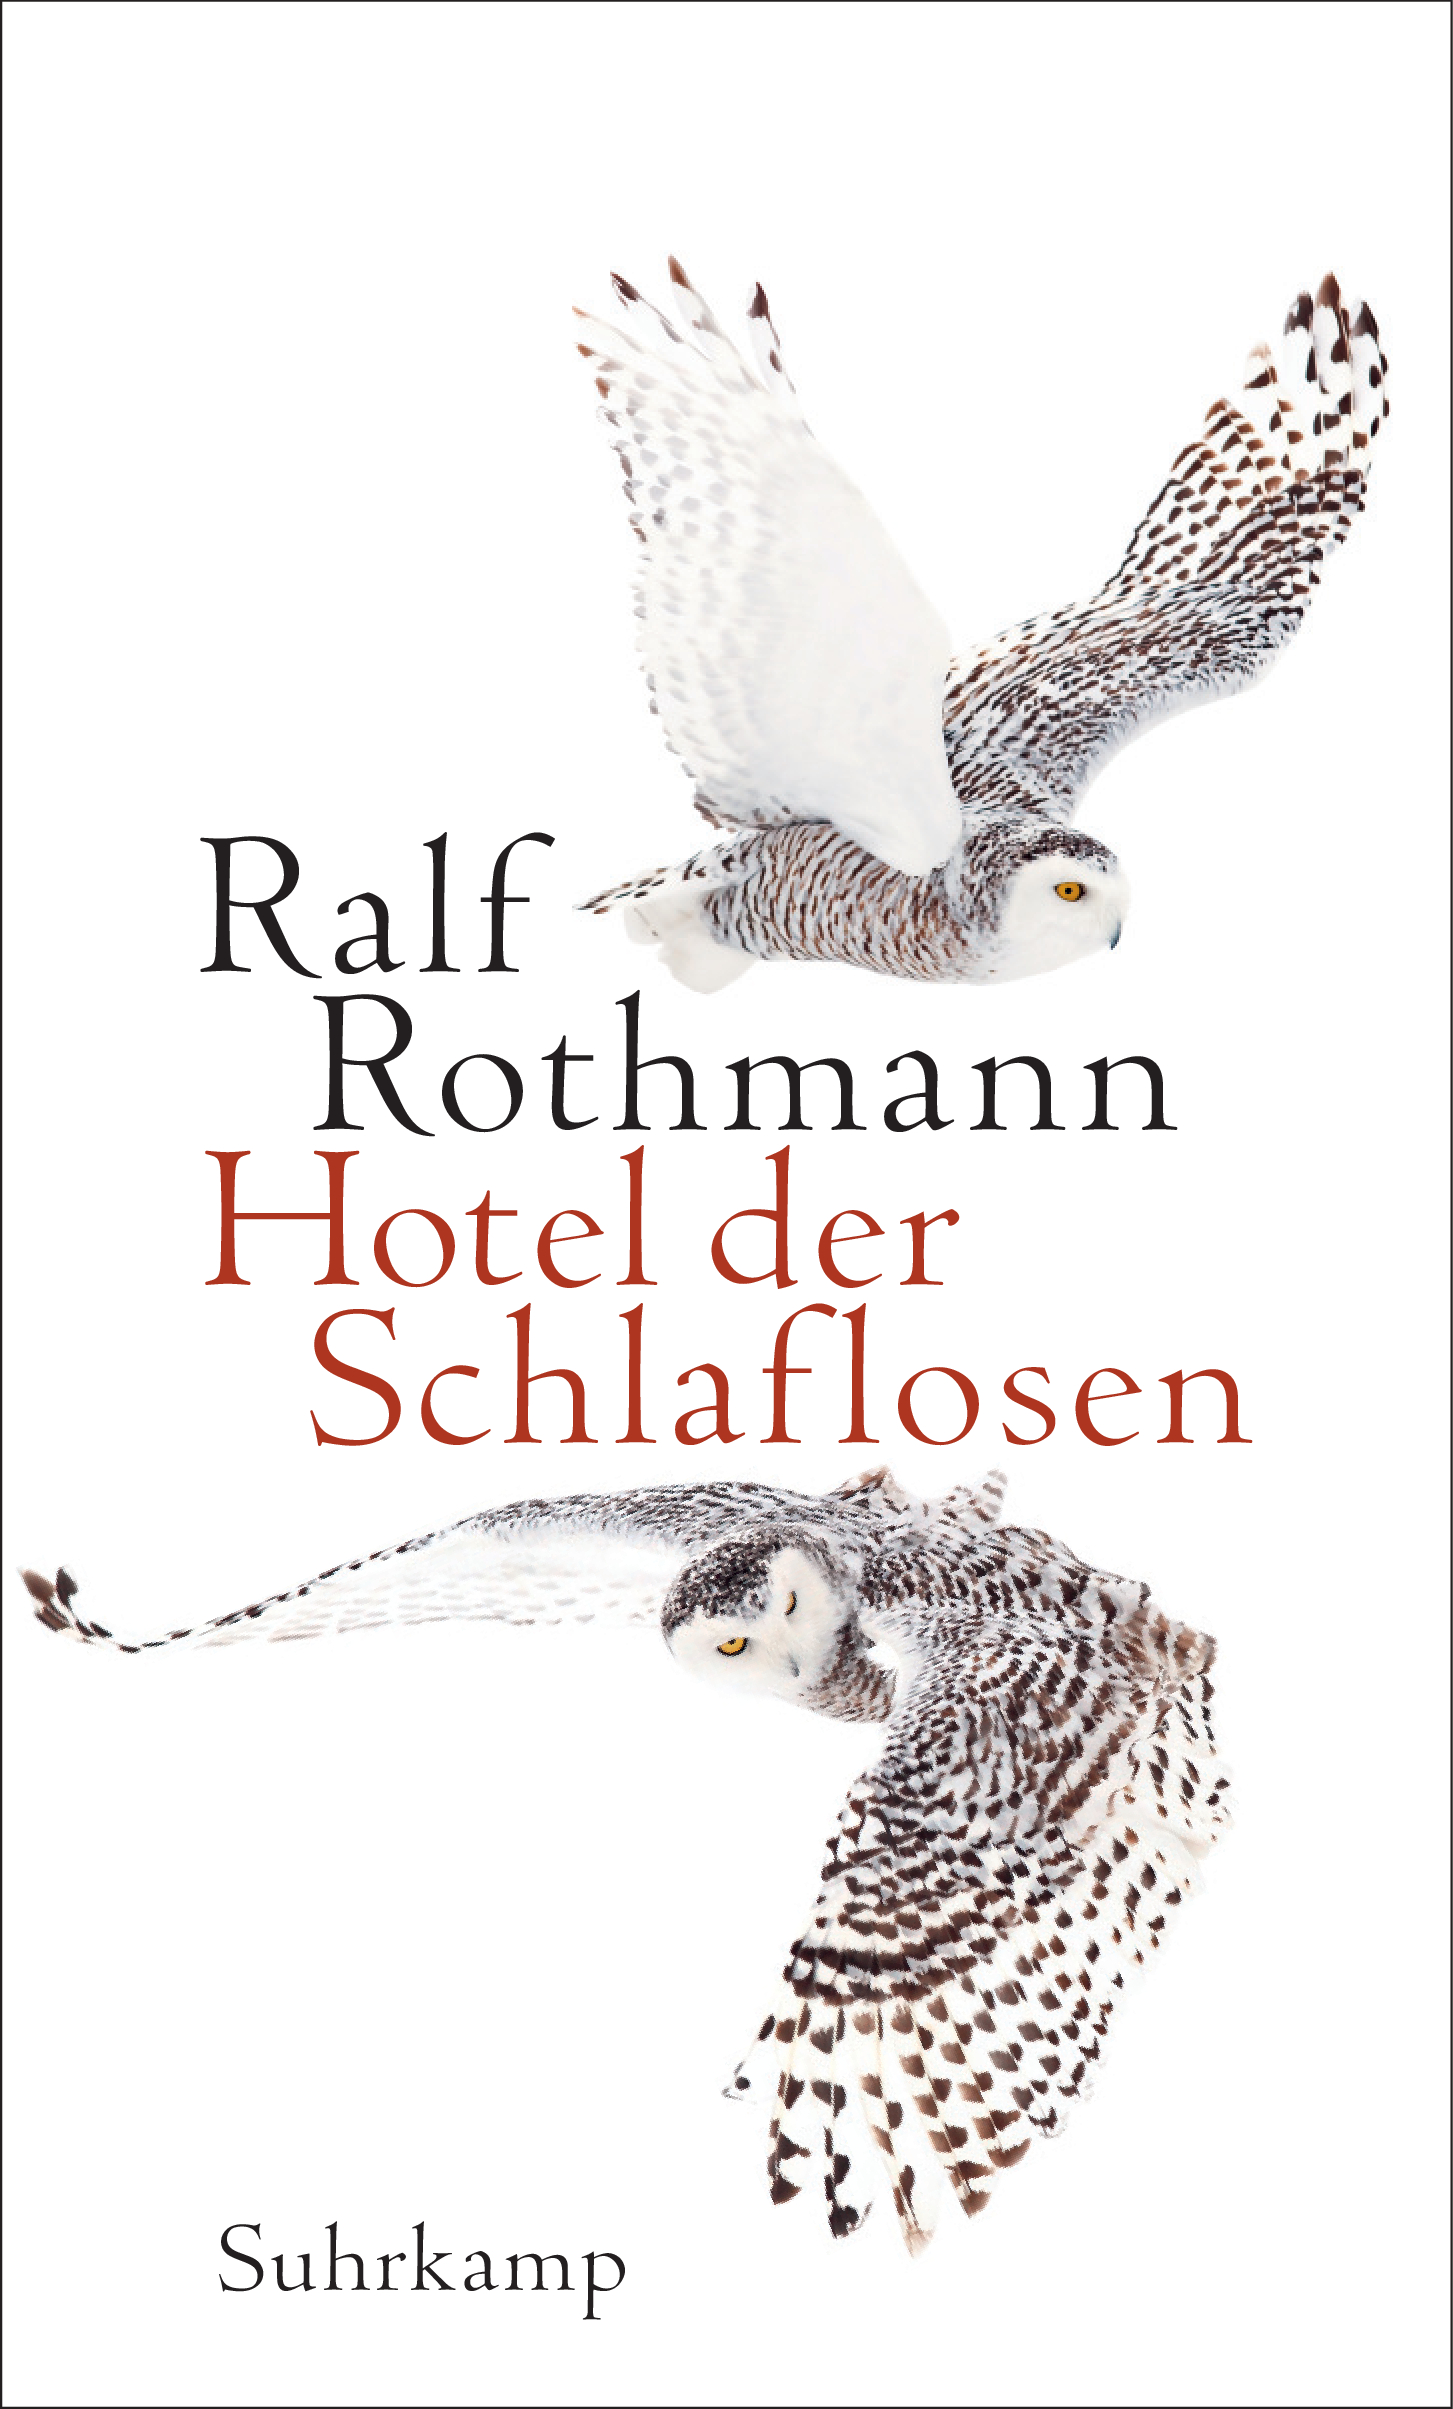 RALF ROTHMANN. HOTEL DER SCHLAFLOSEN